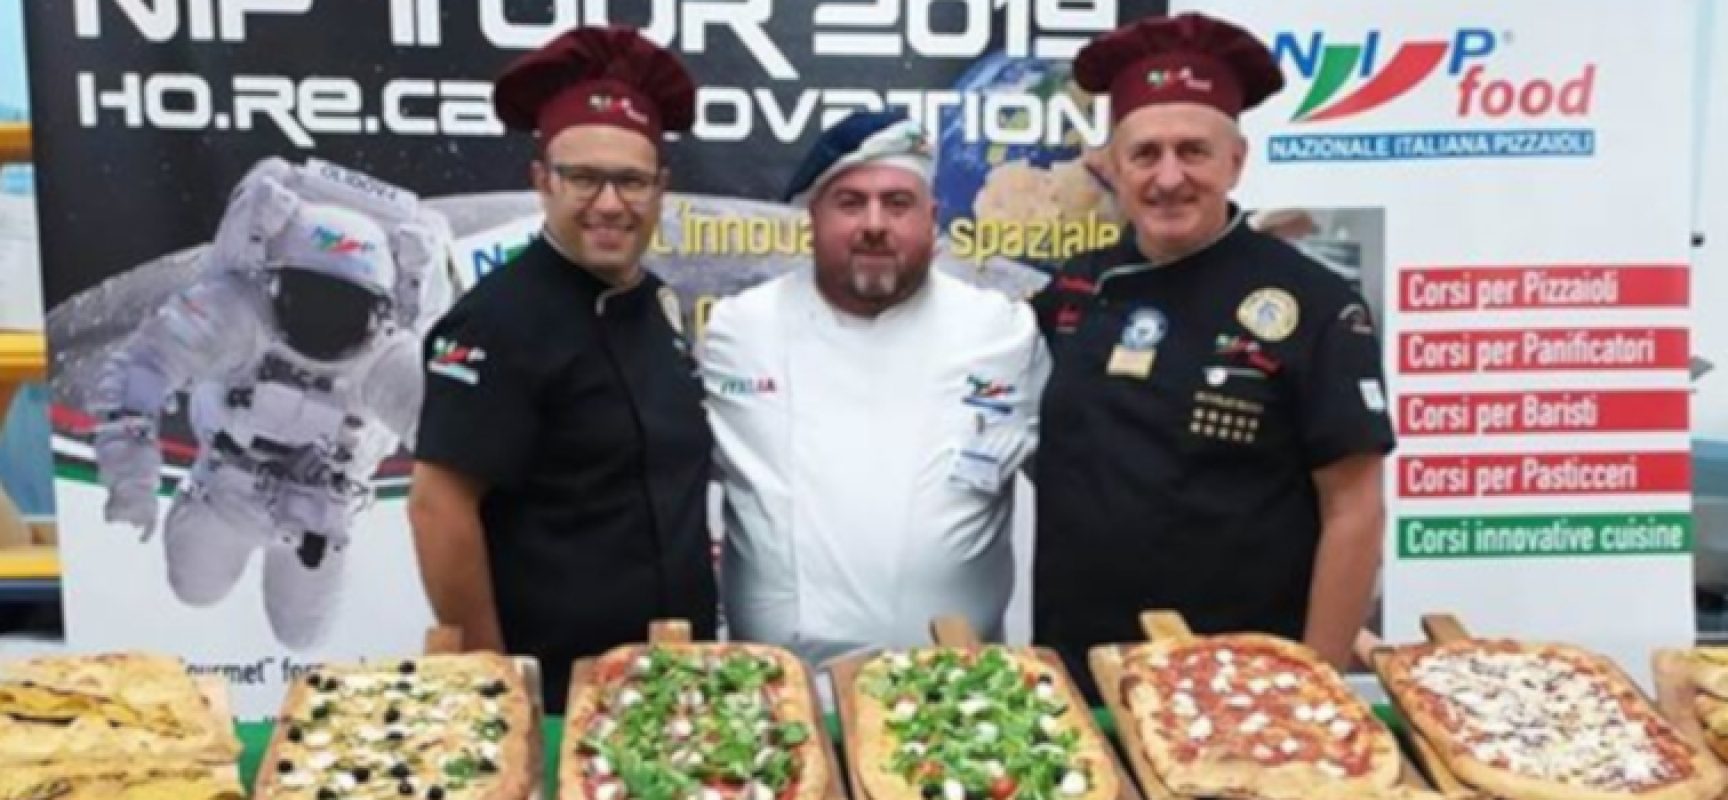 Finali Mondiali Ferrari, le pizze parleranno biscegliese grazie alla Nazionale Italiana Pizzaioli